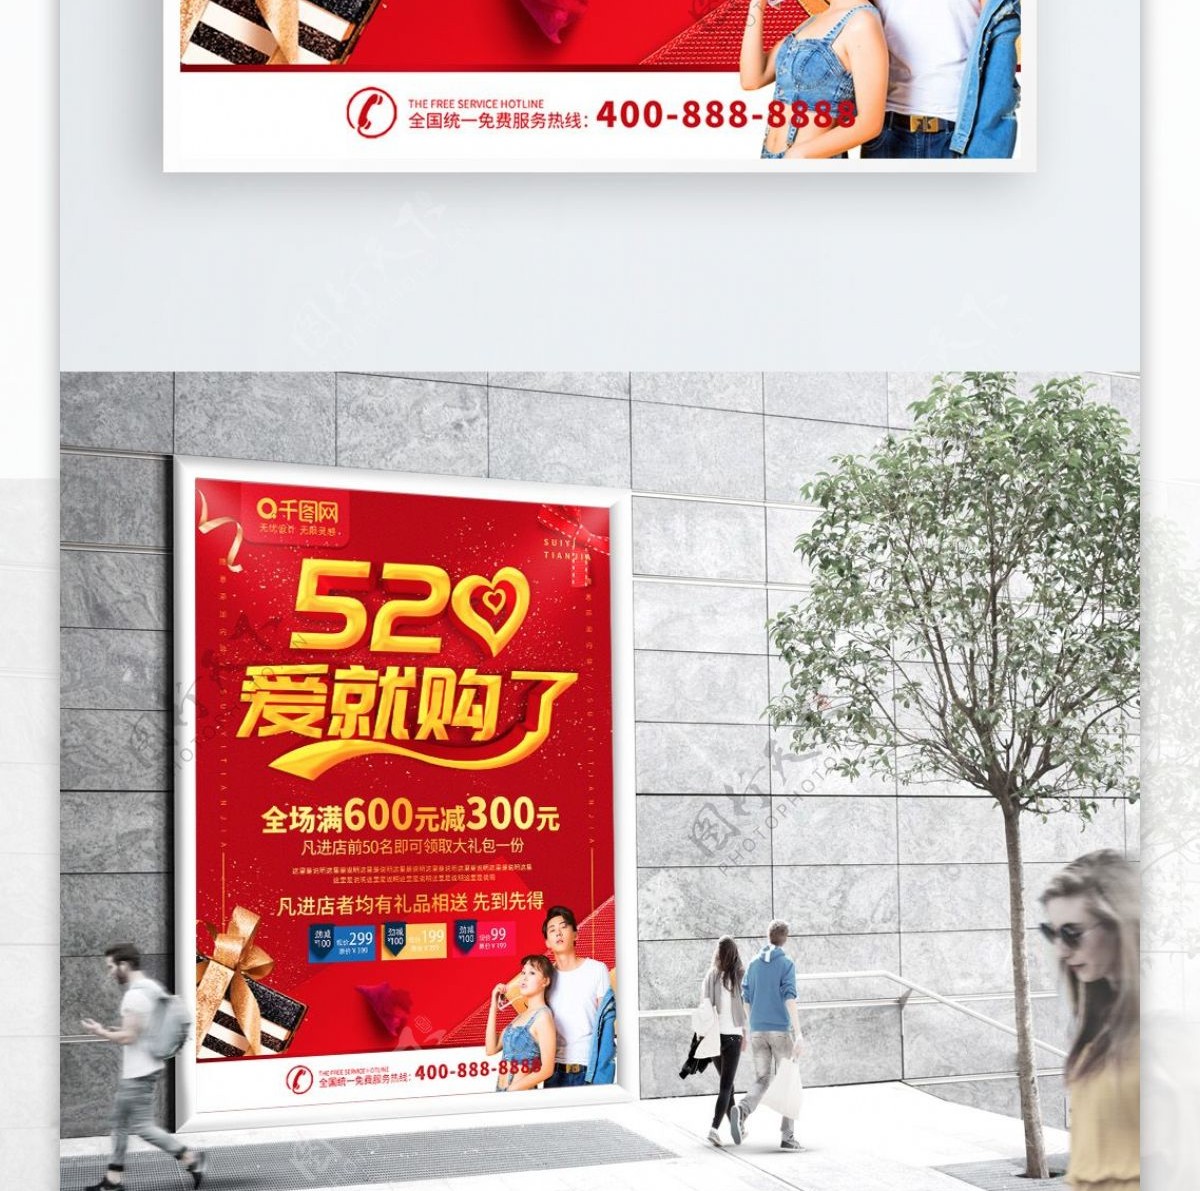 简约红色立体字520促销宣传海报